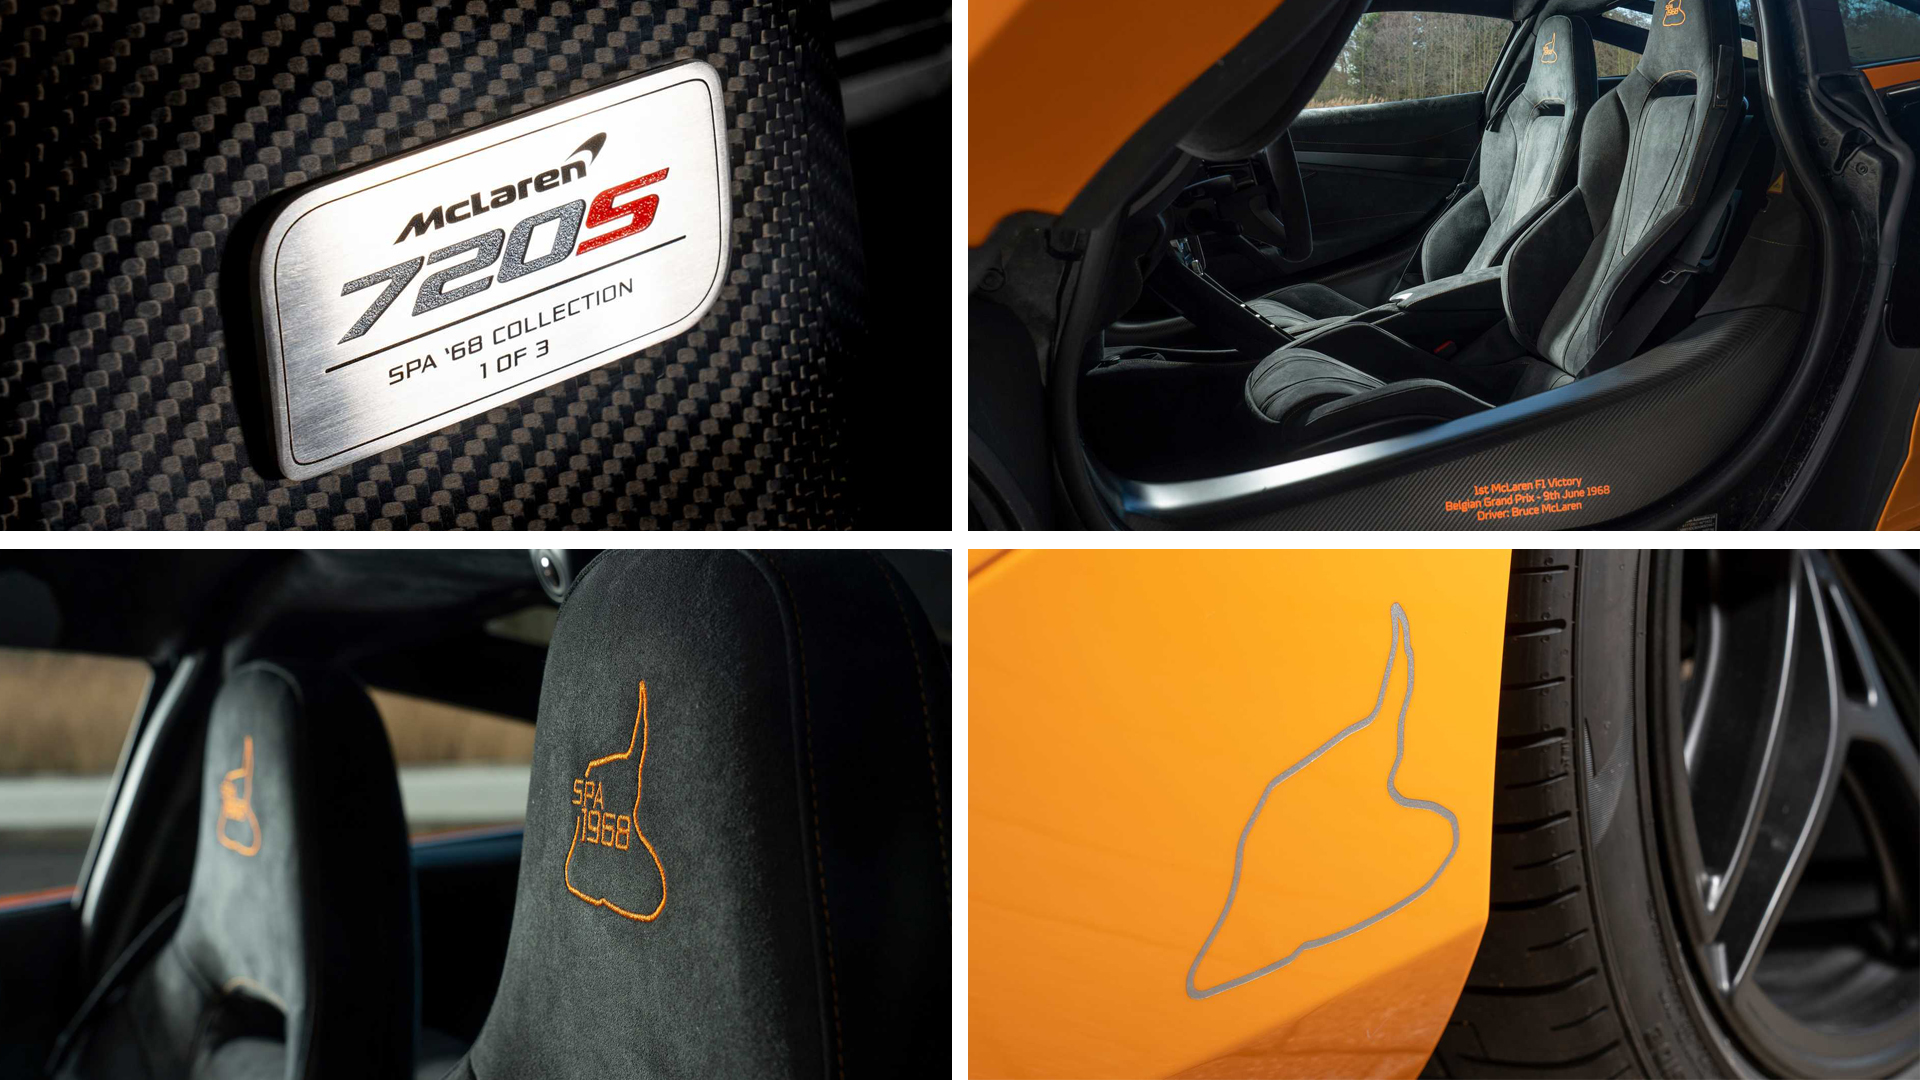 McLaren 720 S Spa 68 Collection